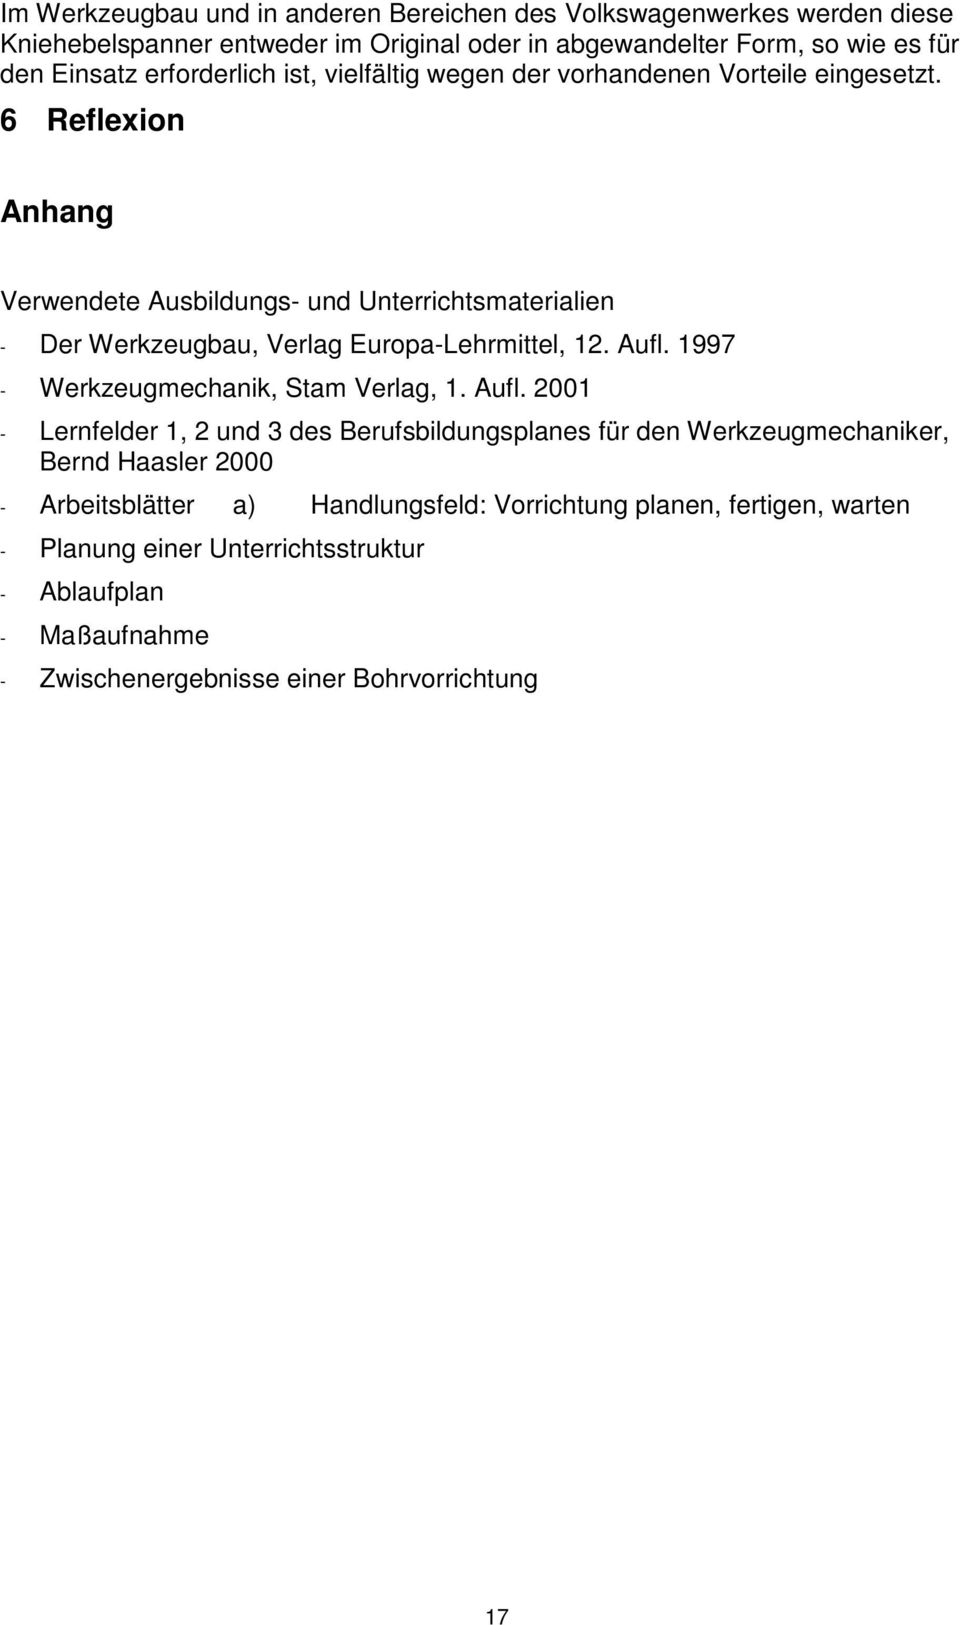 6 Reflexion Anhang Verwendete Ausbildungs- und Unterrichtsmaterialien - Der Werkzeugbau, Verlag Europa-Lehrmittel, 12. Aufl.